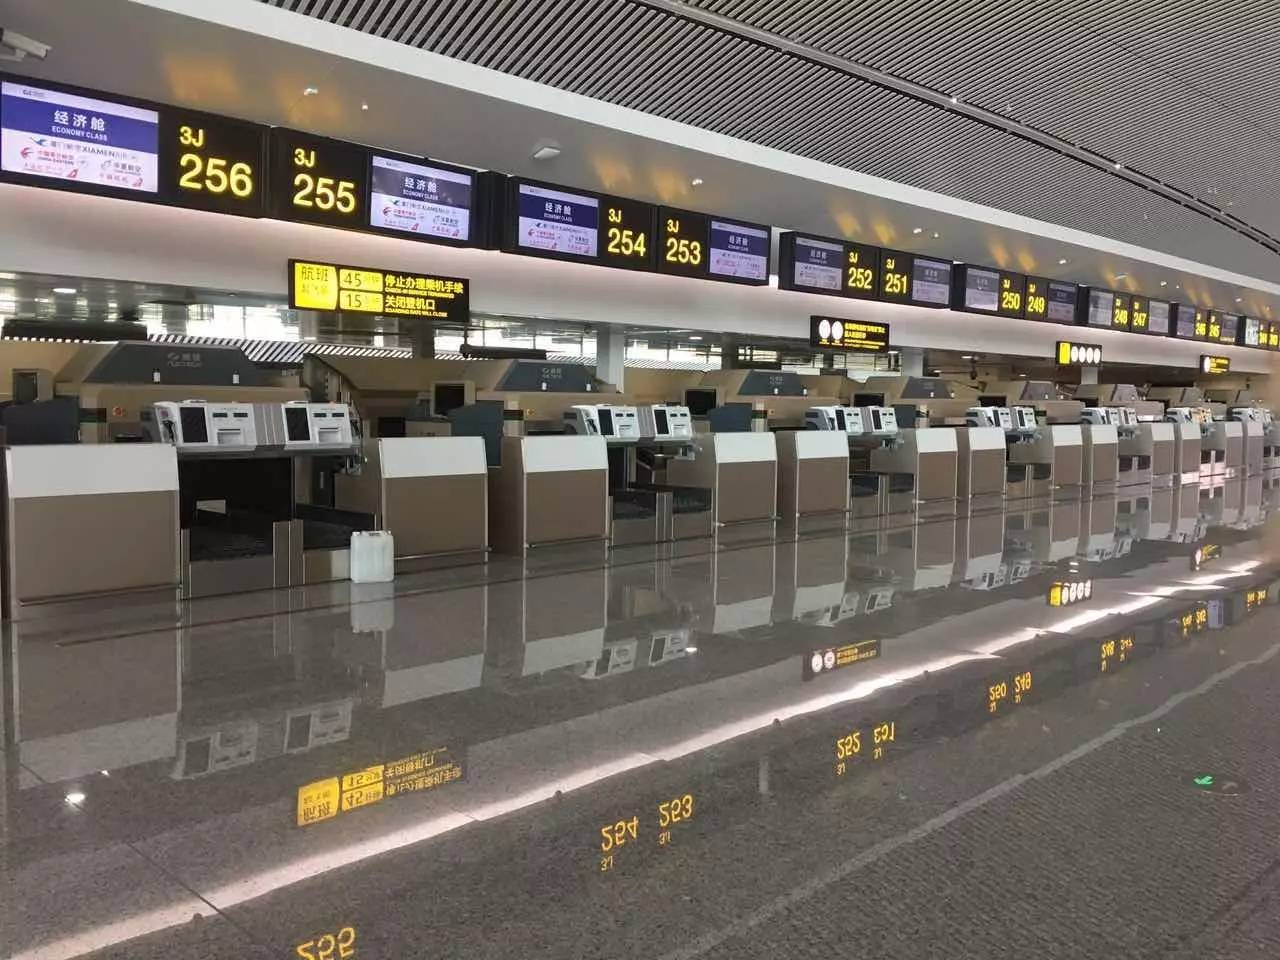 国航将迁入重庆江北机场t3航站楼,乘机信息早知道!